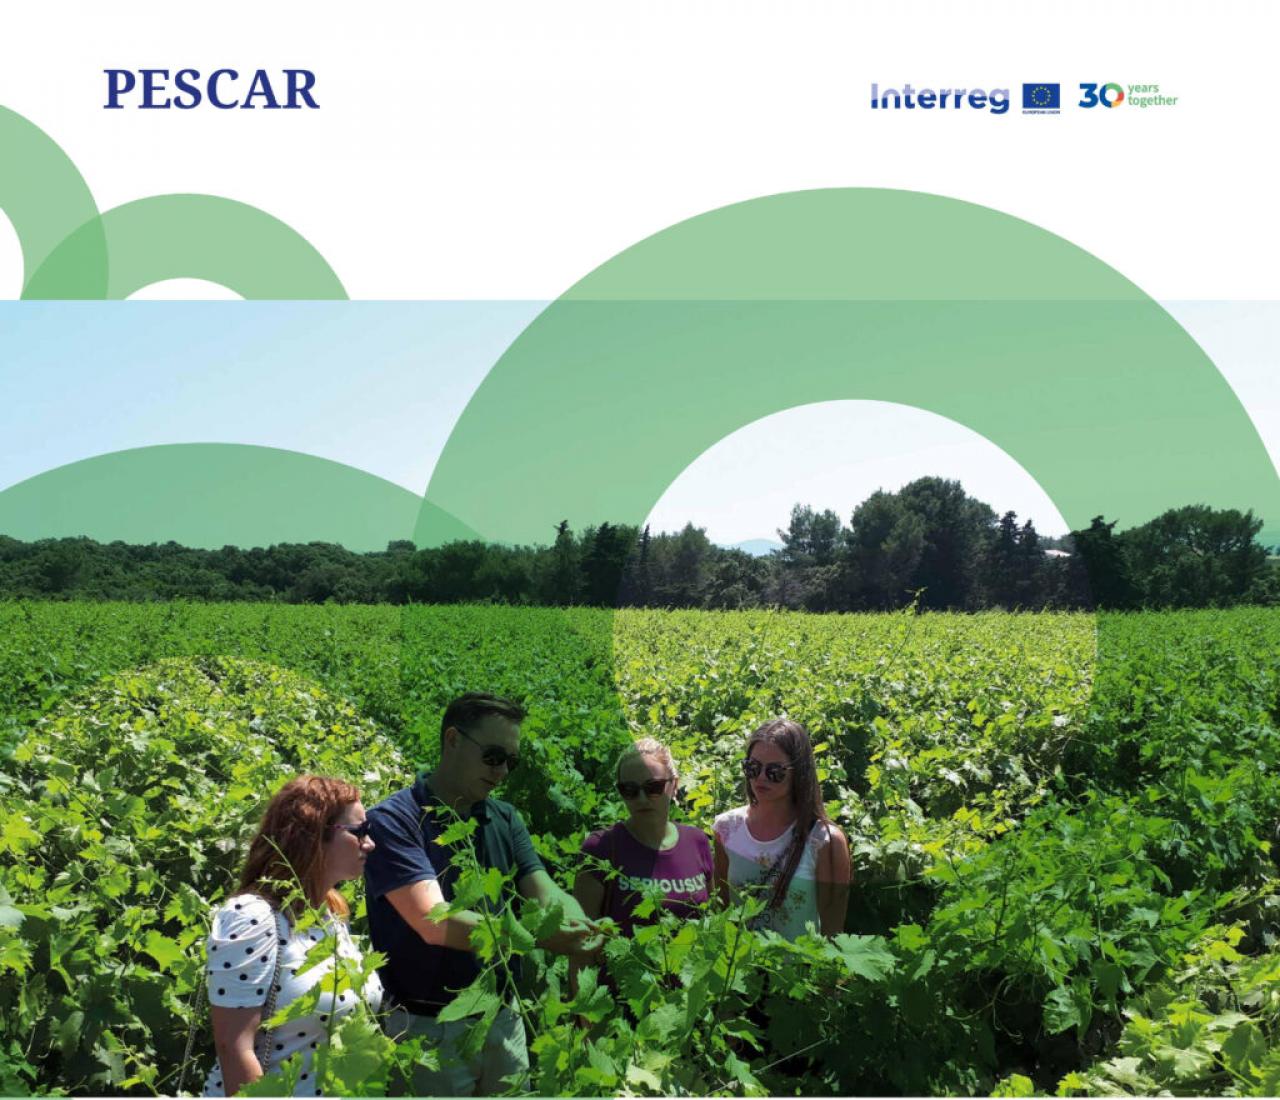 Projekt PESCAR - Projekt PESCAR u dobrom društvu: Obilježavanje 30 godina Interreg programa